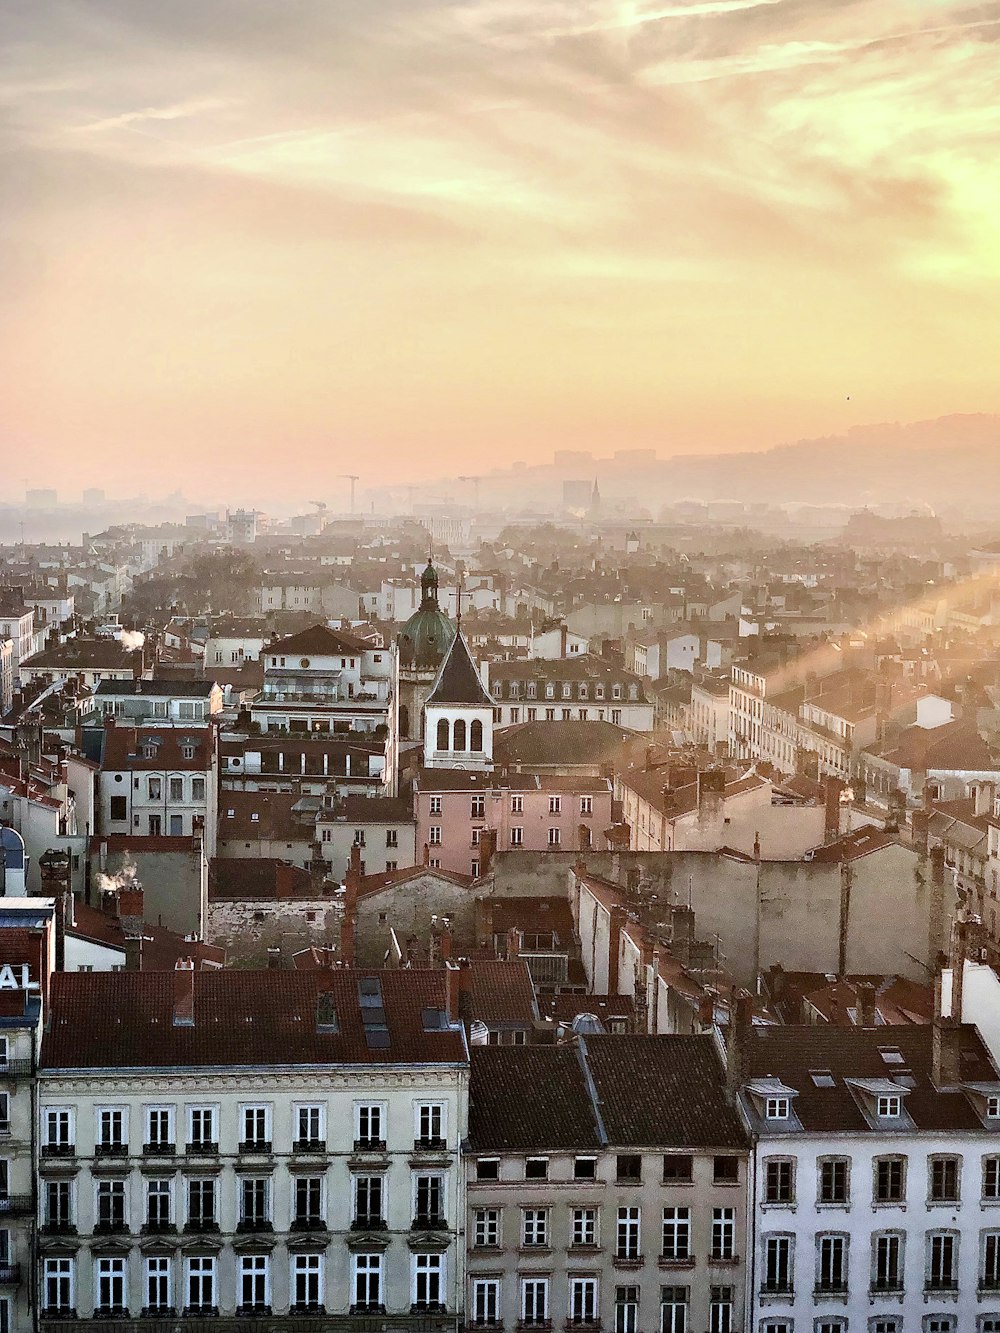 Vista aérea de la ciudad durante la puesta del sol